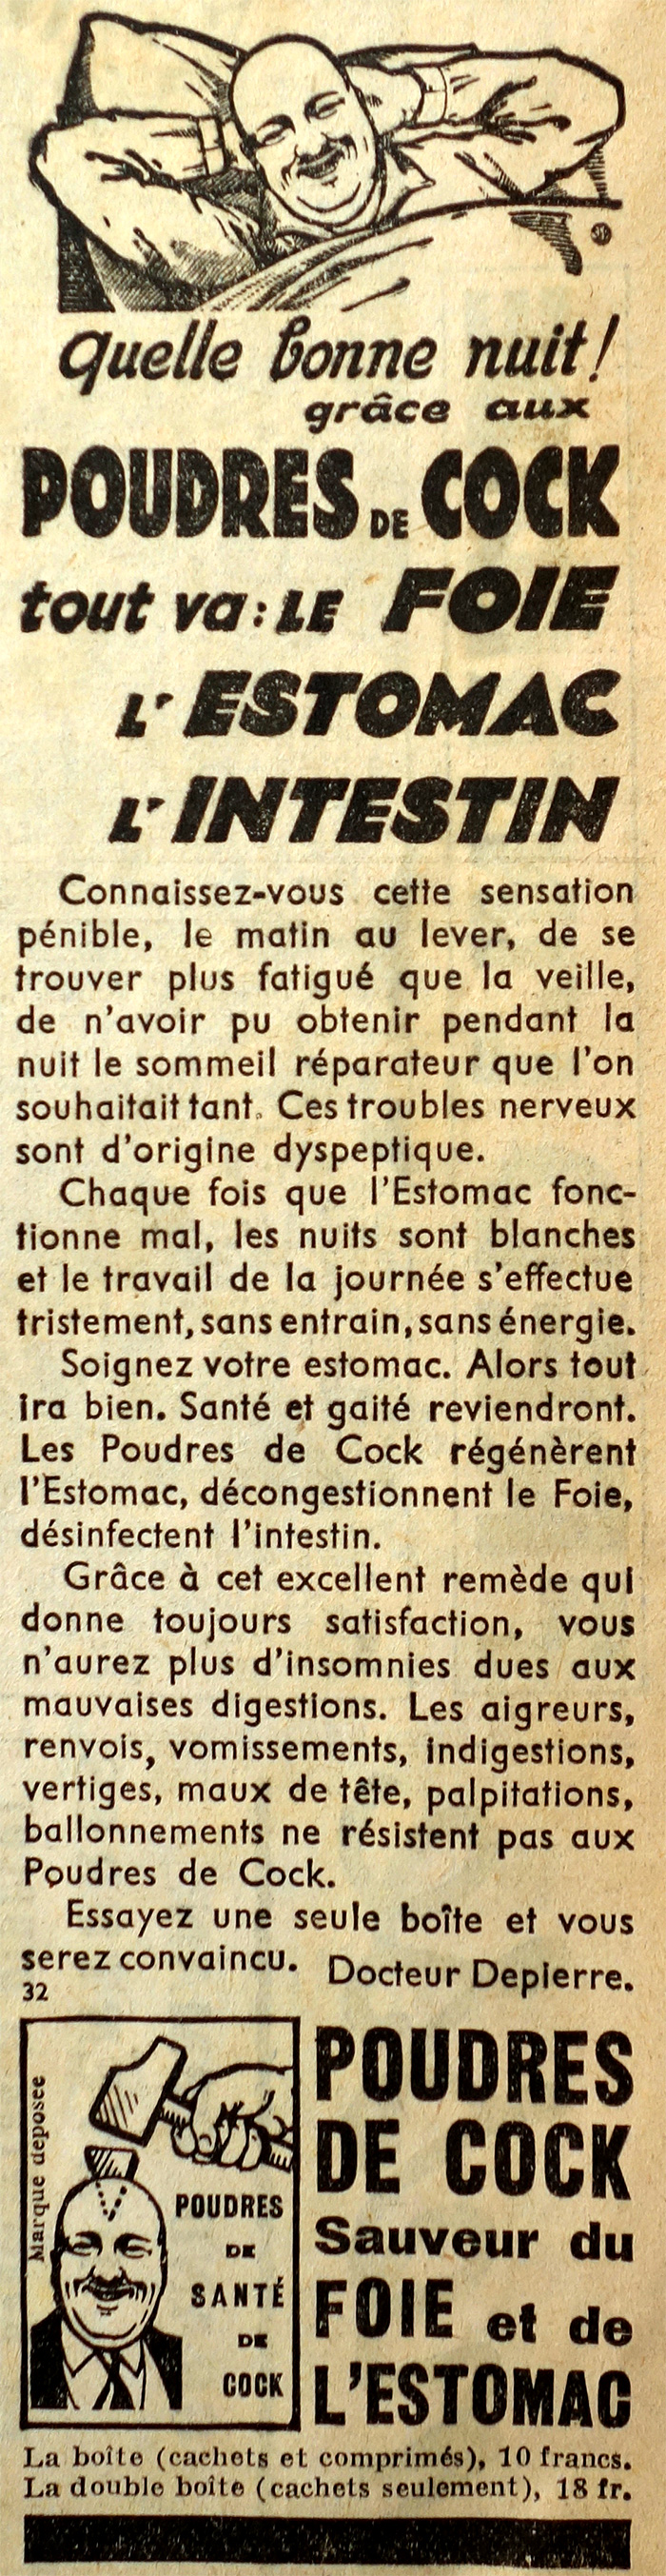 poudres-de-cock-publicite-journal-le-petit-parisien-1936-site-photogriffon.jpg